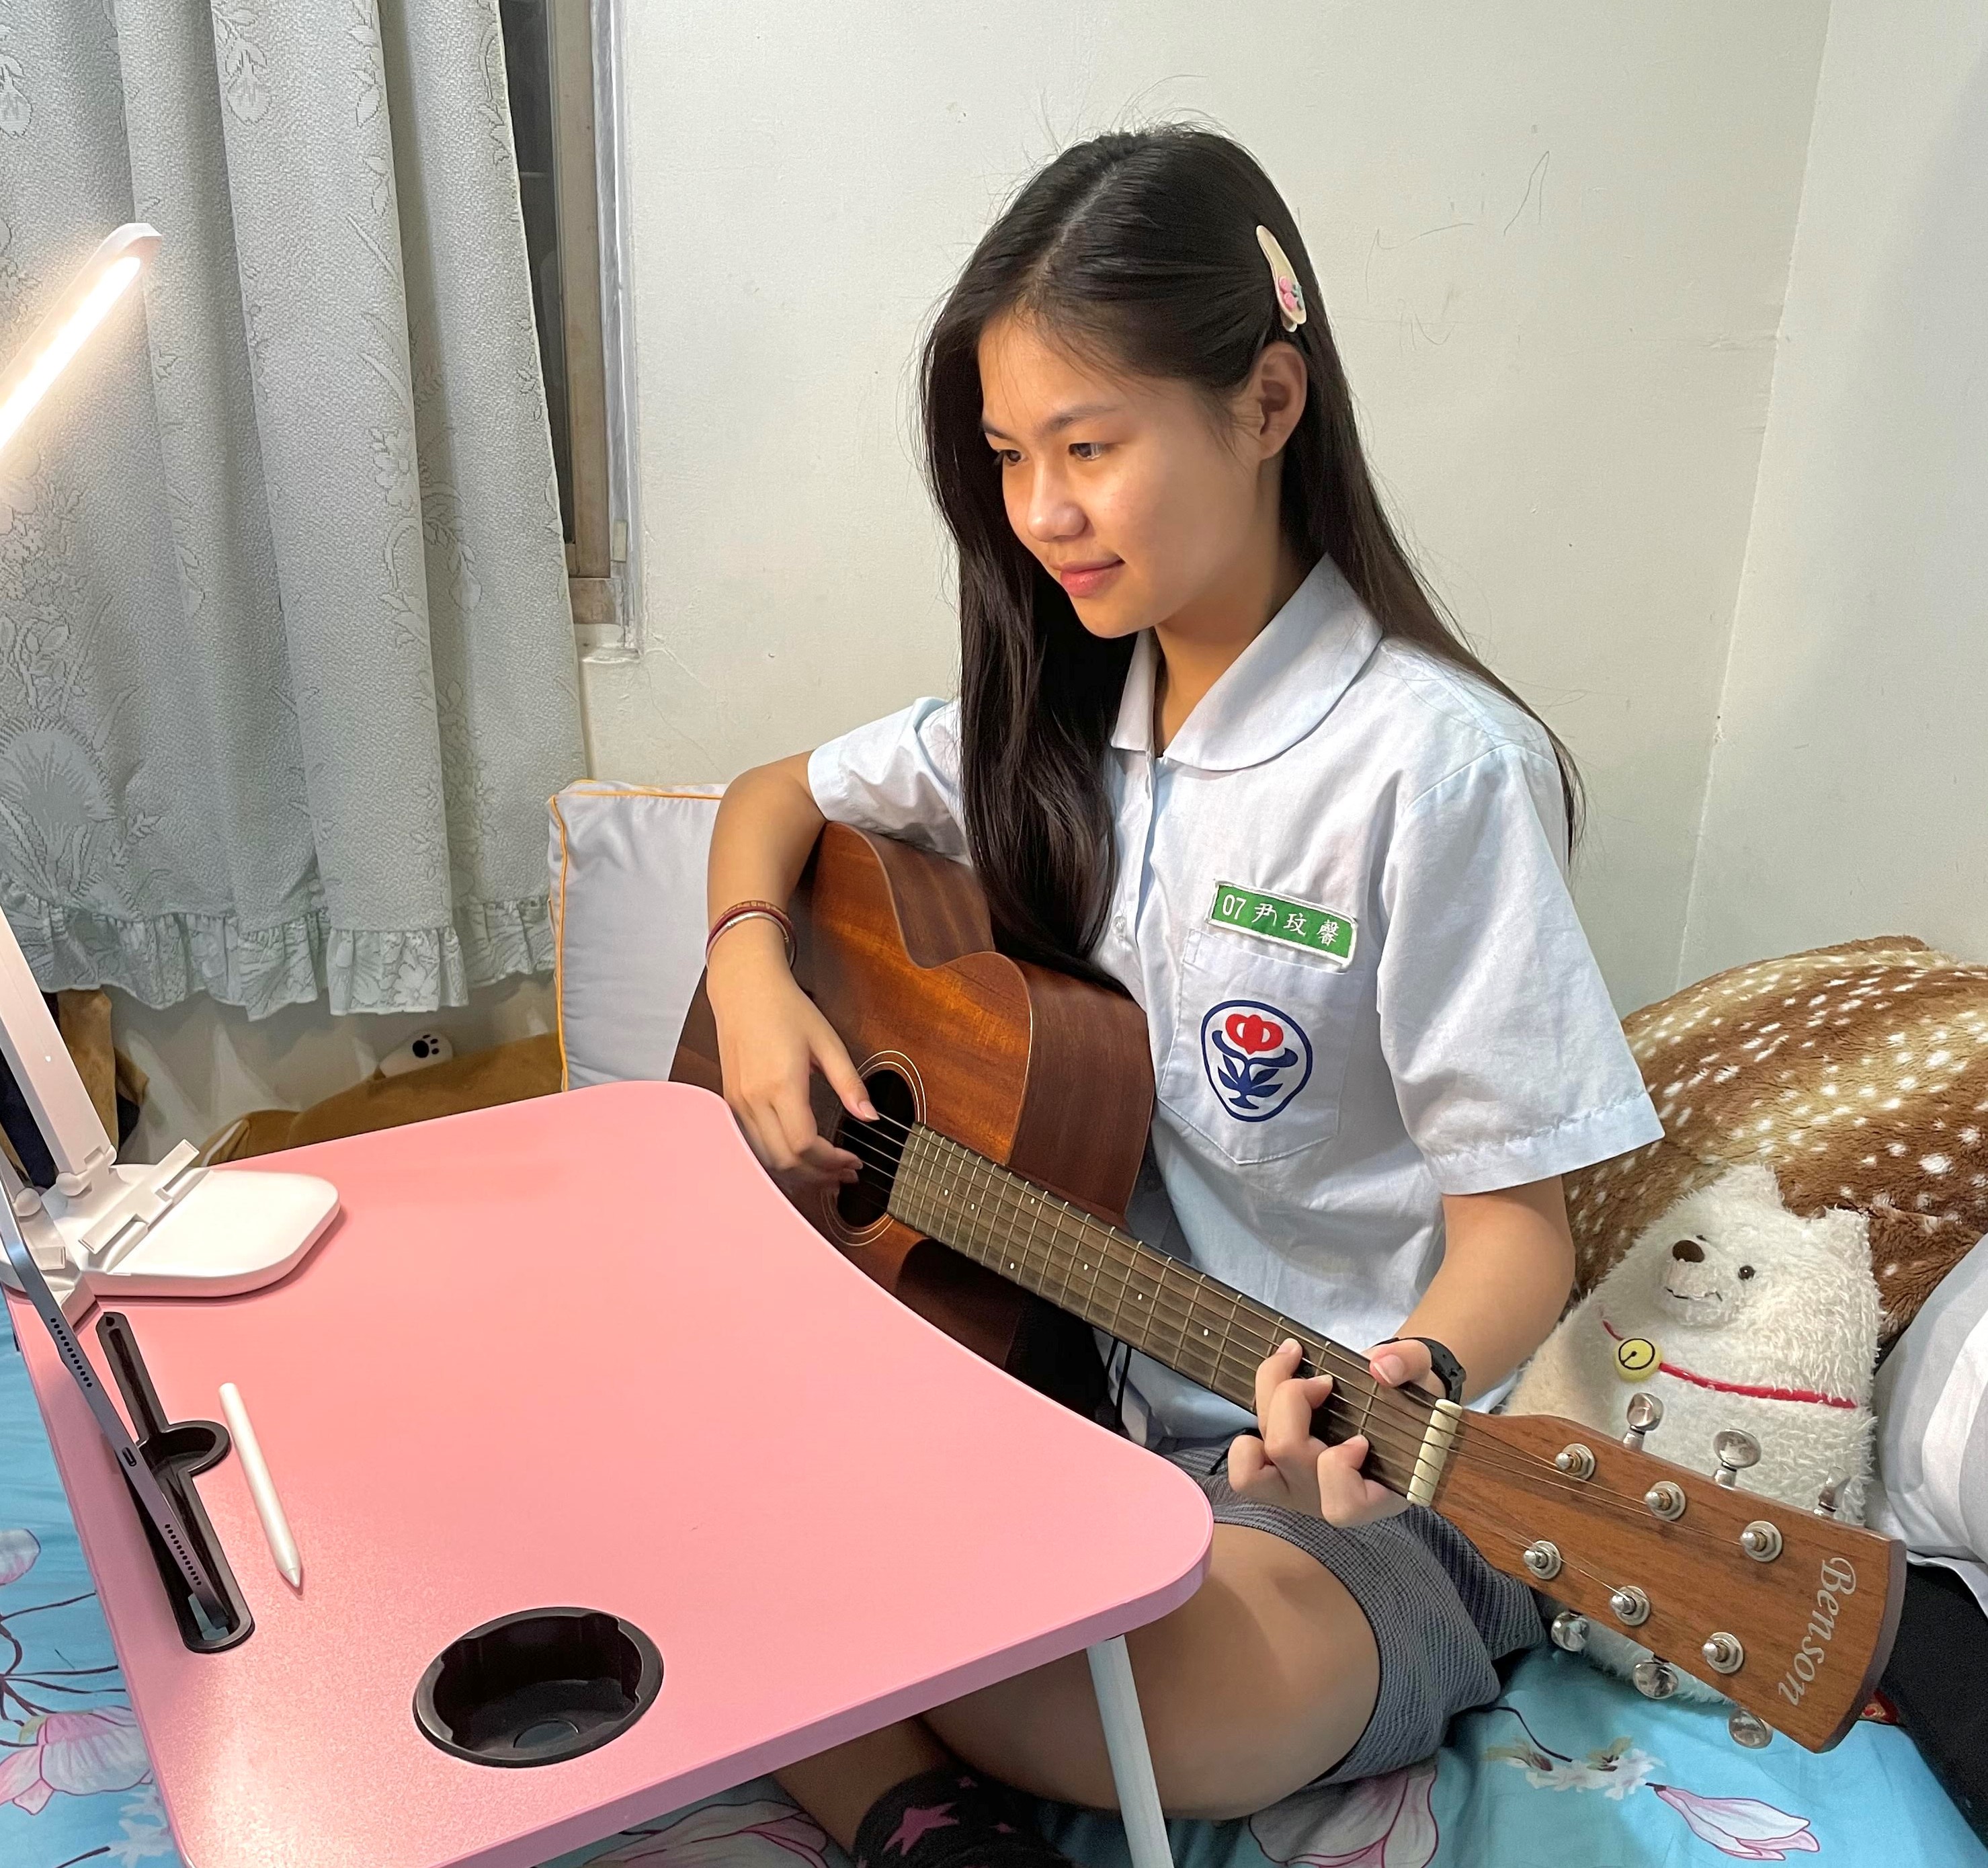 吉他彈唱、聊流行文化搭起交流橋樑　中平國中與日本學生Meet在一起.